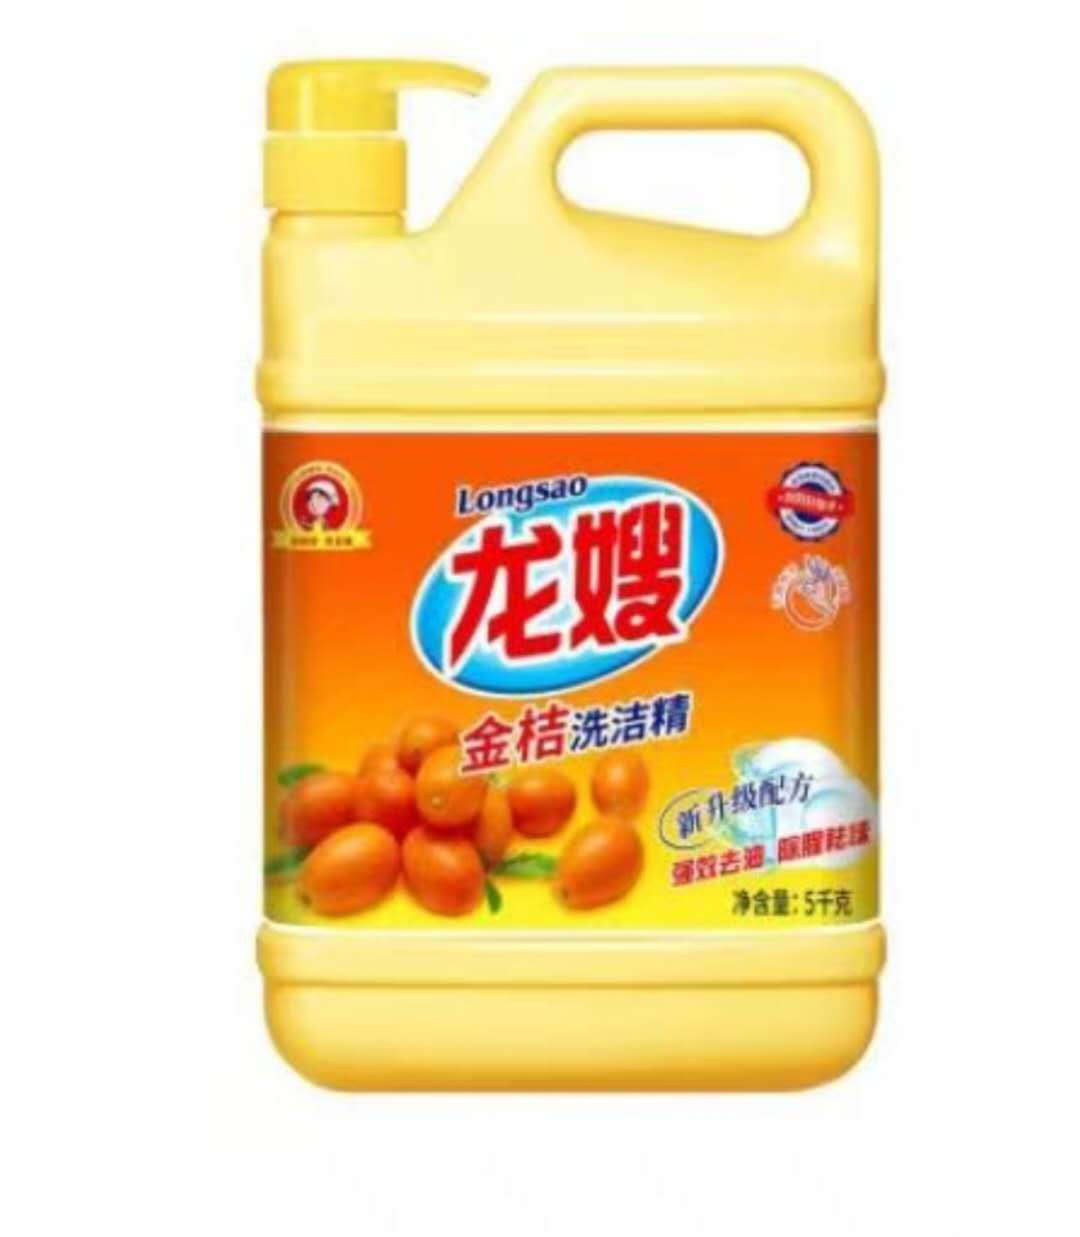 四川省达州市龙嫂1290克柠檬洗洁精优质产品 洗的干净不伤手 多种污渍无残留